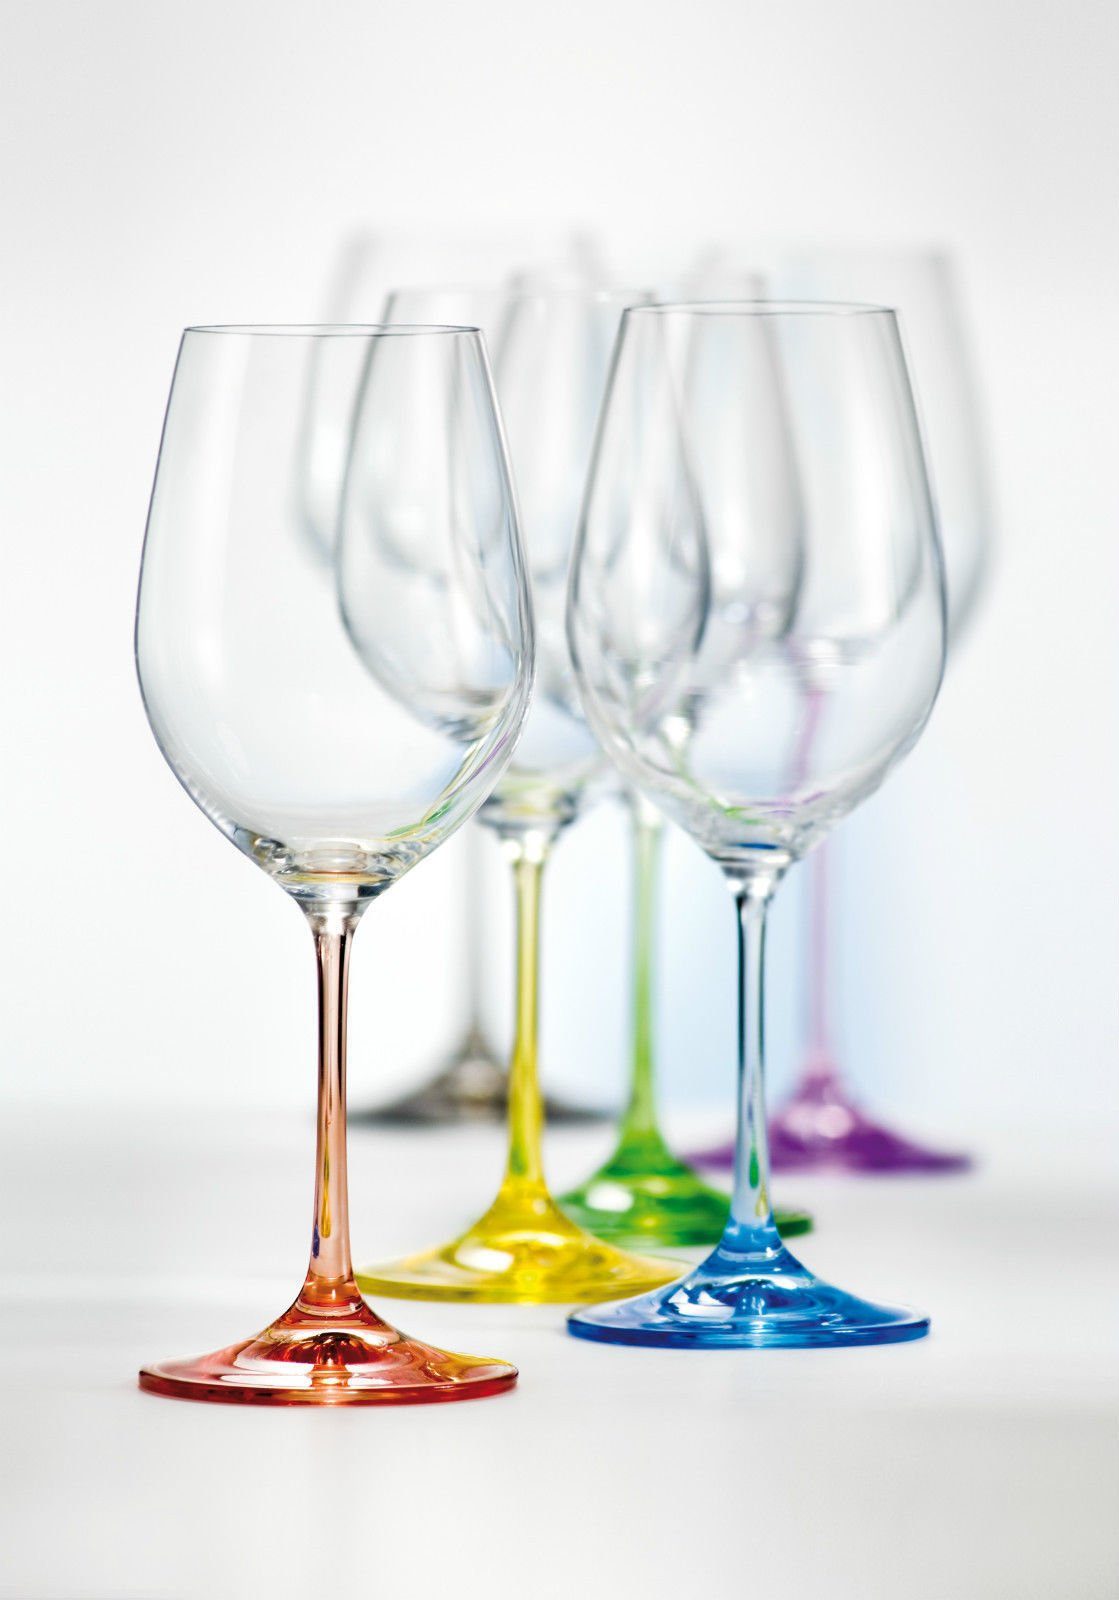 Crystalex Weißweinglas Rainbow 350 ml, Kristallglas, farbig, Kristallglas, 6 unterschiedliche Farben